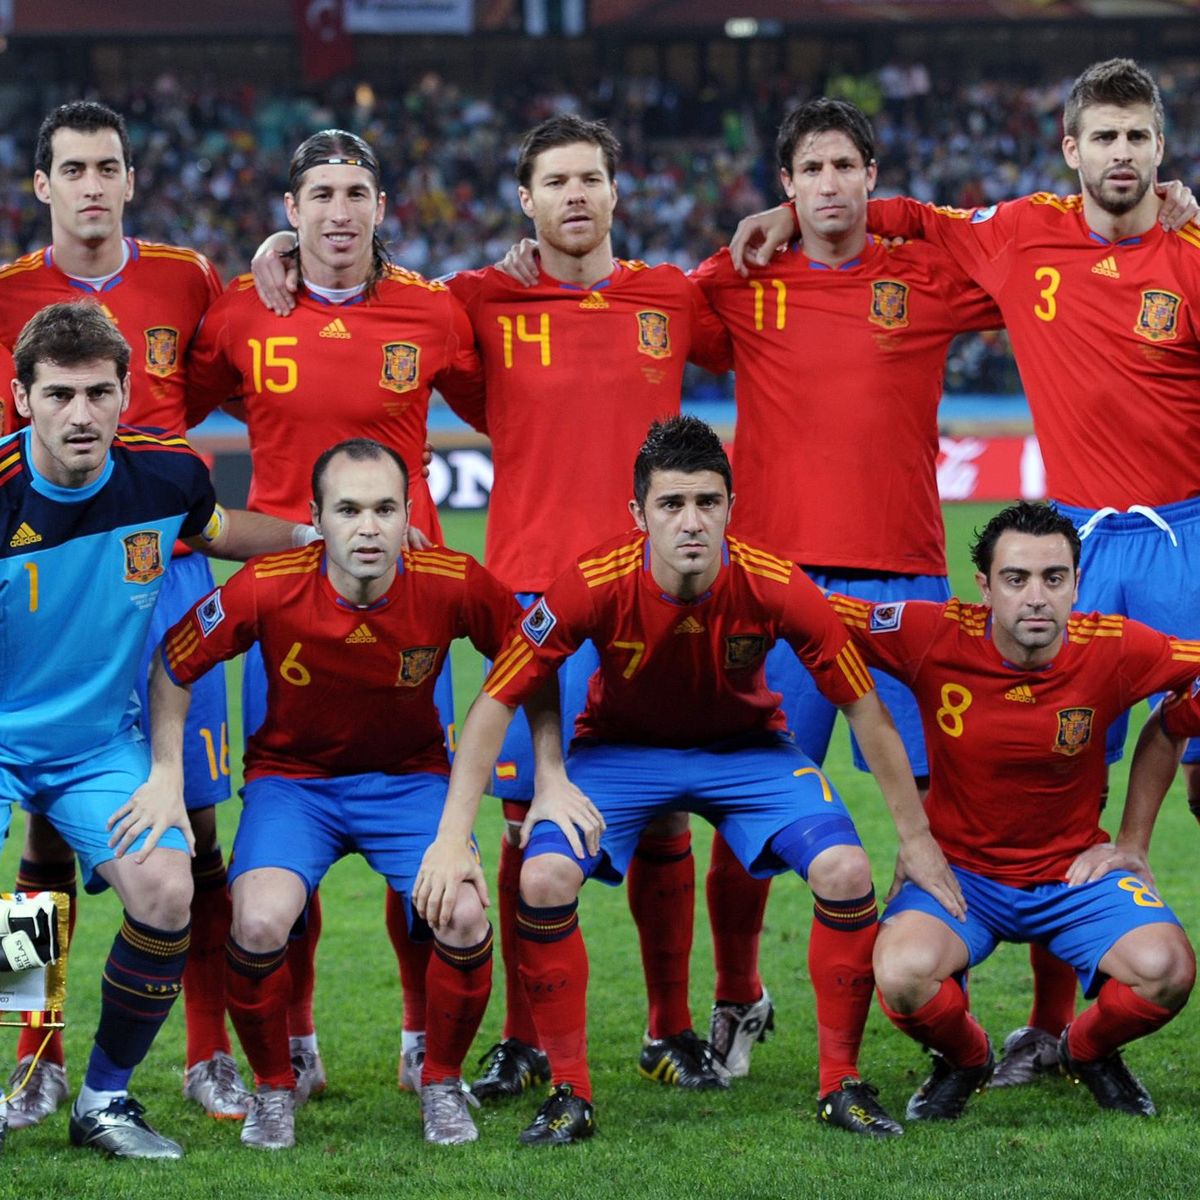 Alegrarse intervalo tragedia Reto Eurosport: La camiseta del Mundial 2010, la más bonita de la Selección  para nuestros usuarios - Eurosport